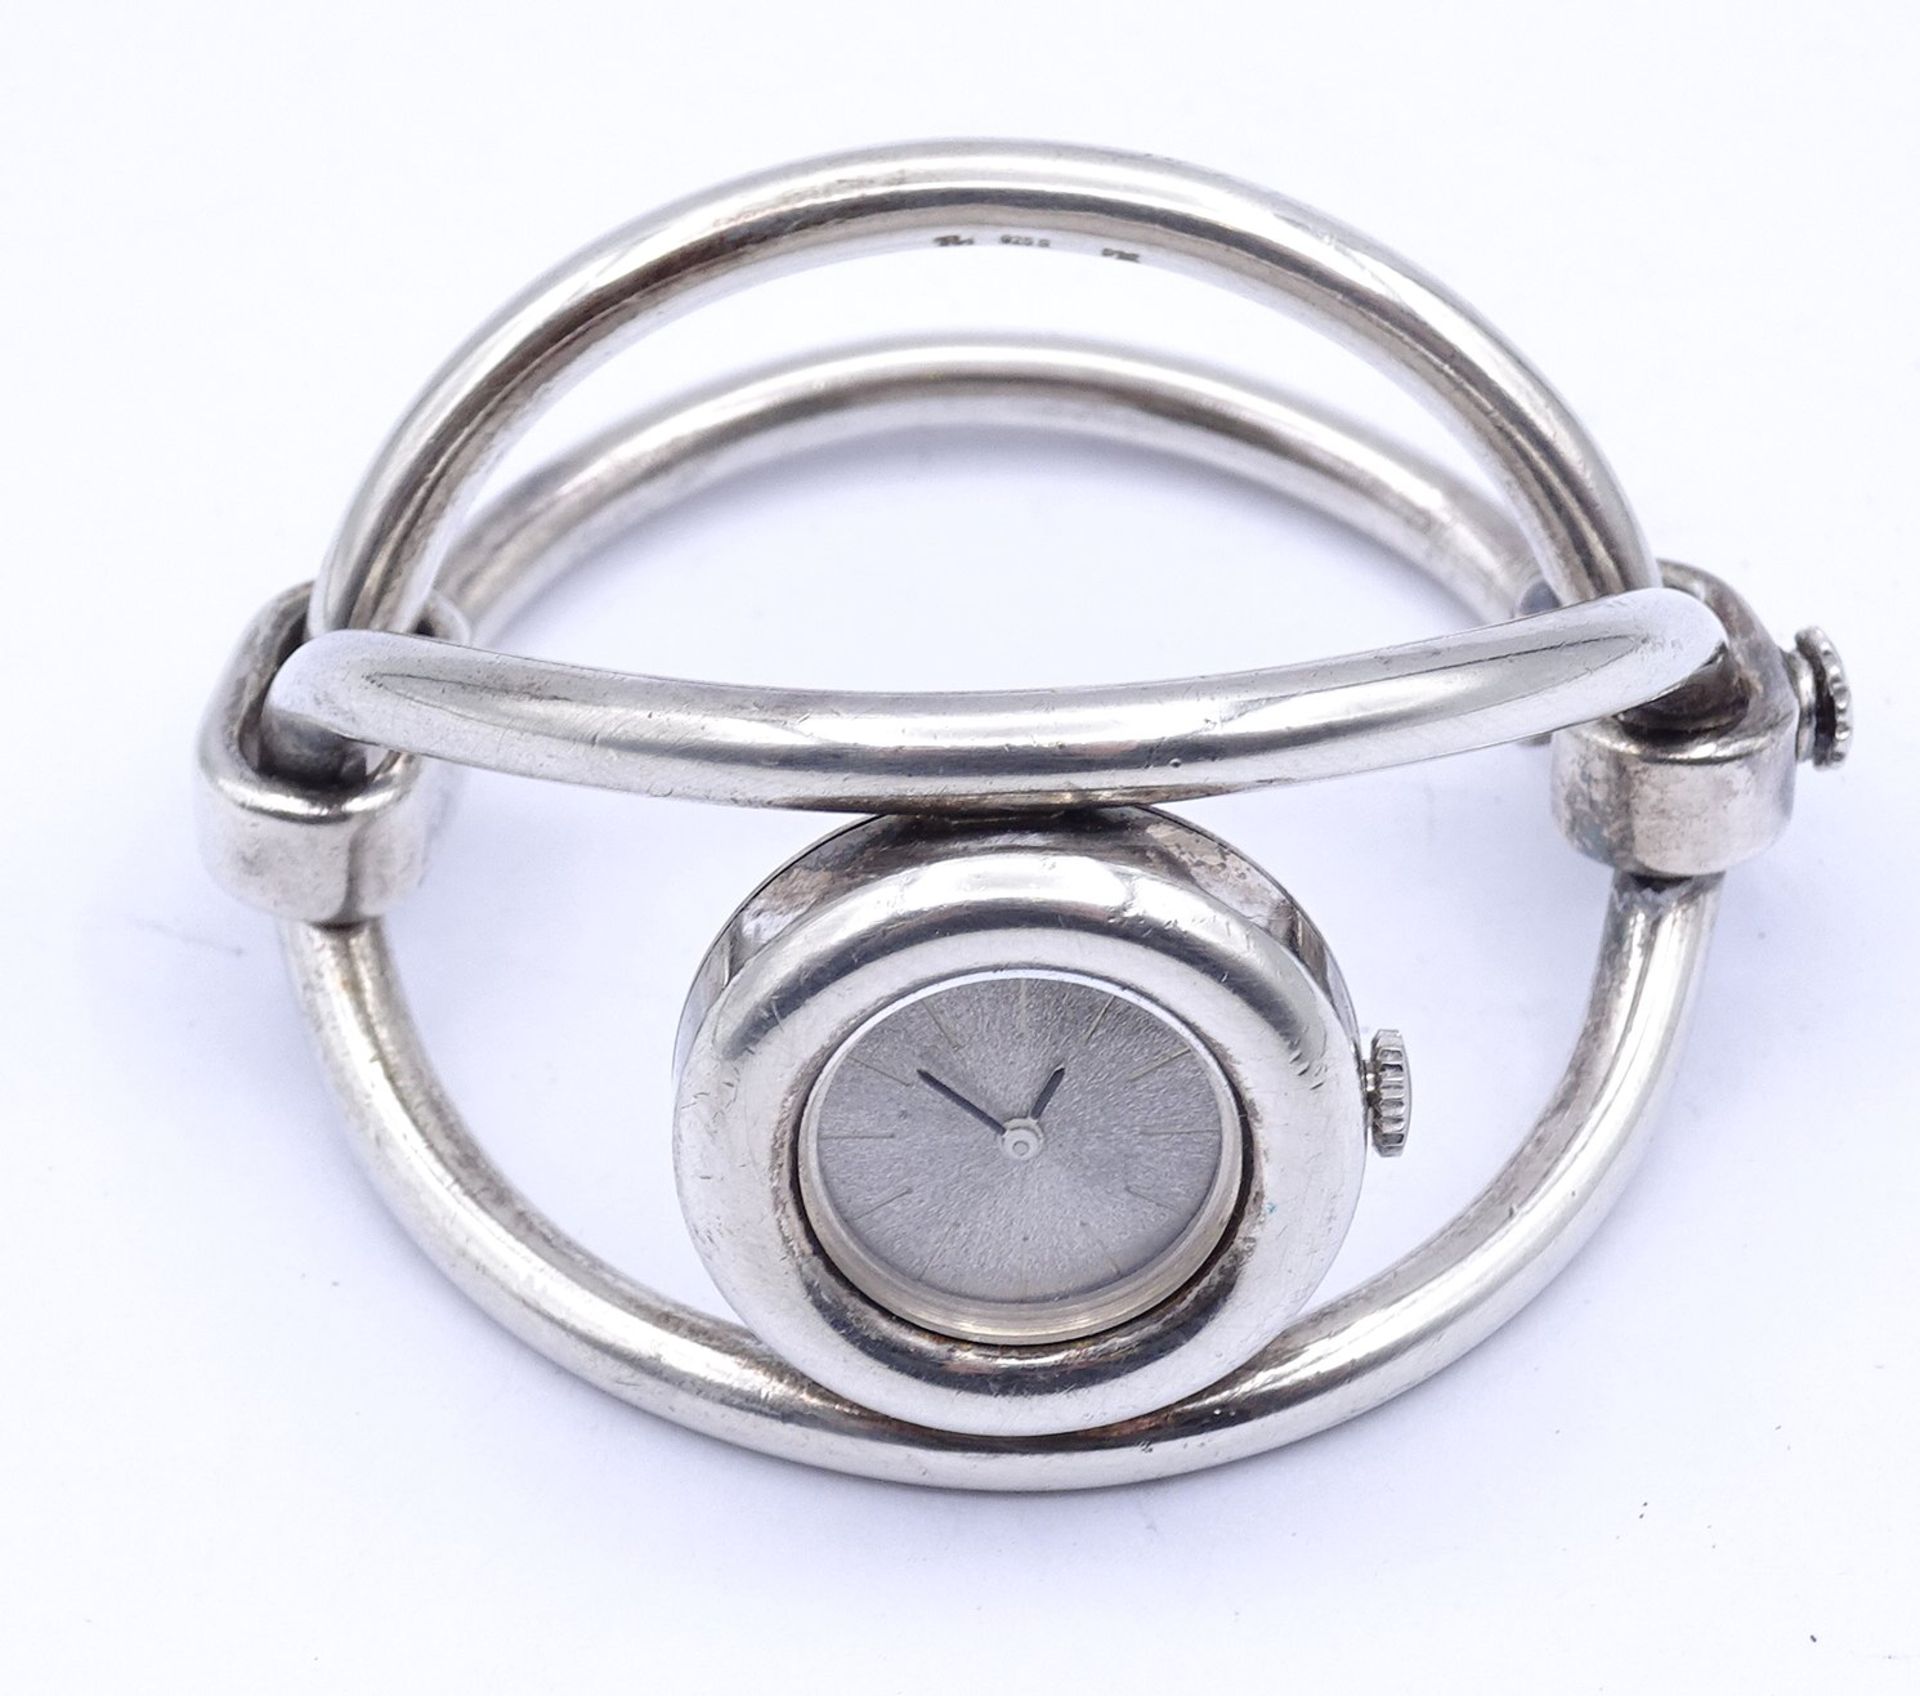 Massive Sterling Silber Armbanduhr , Markenlos, mechanisch, Werk läuft, D. 27,8mm, 106g. - Bild 2 aus 5